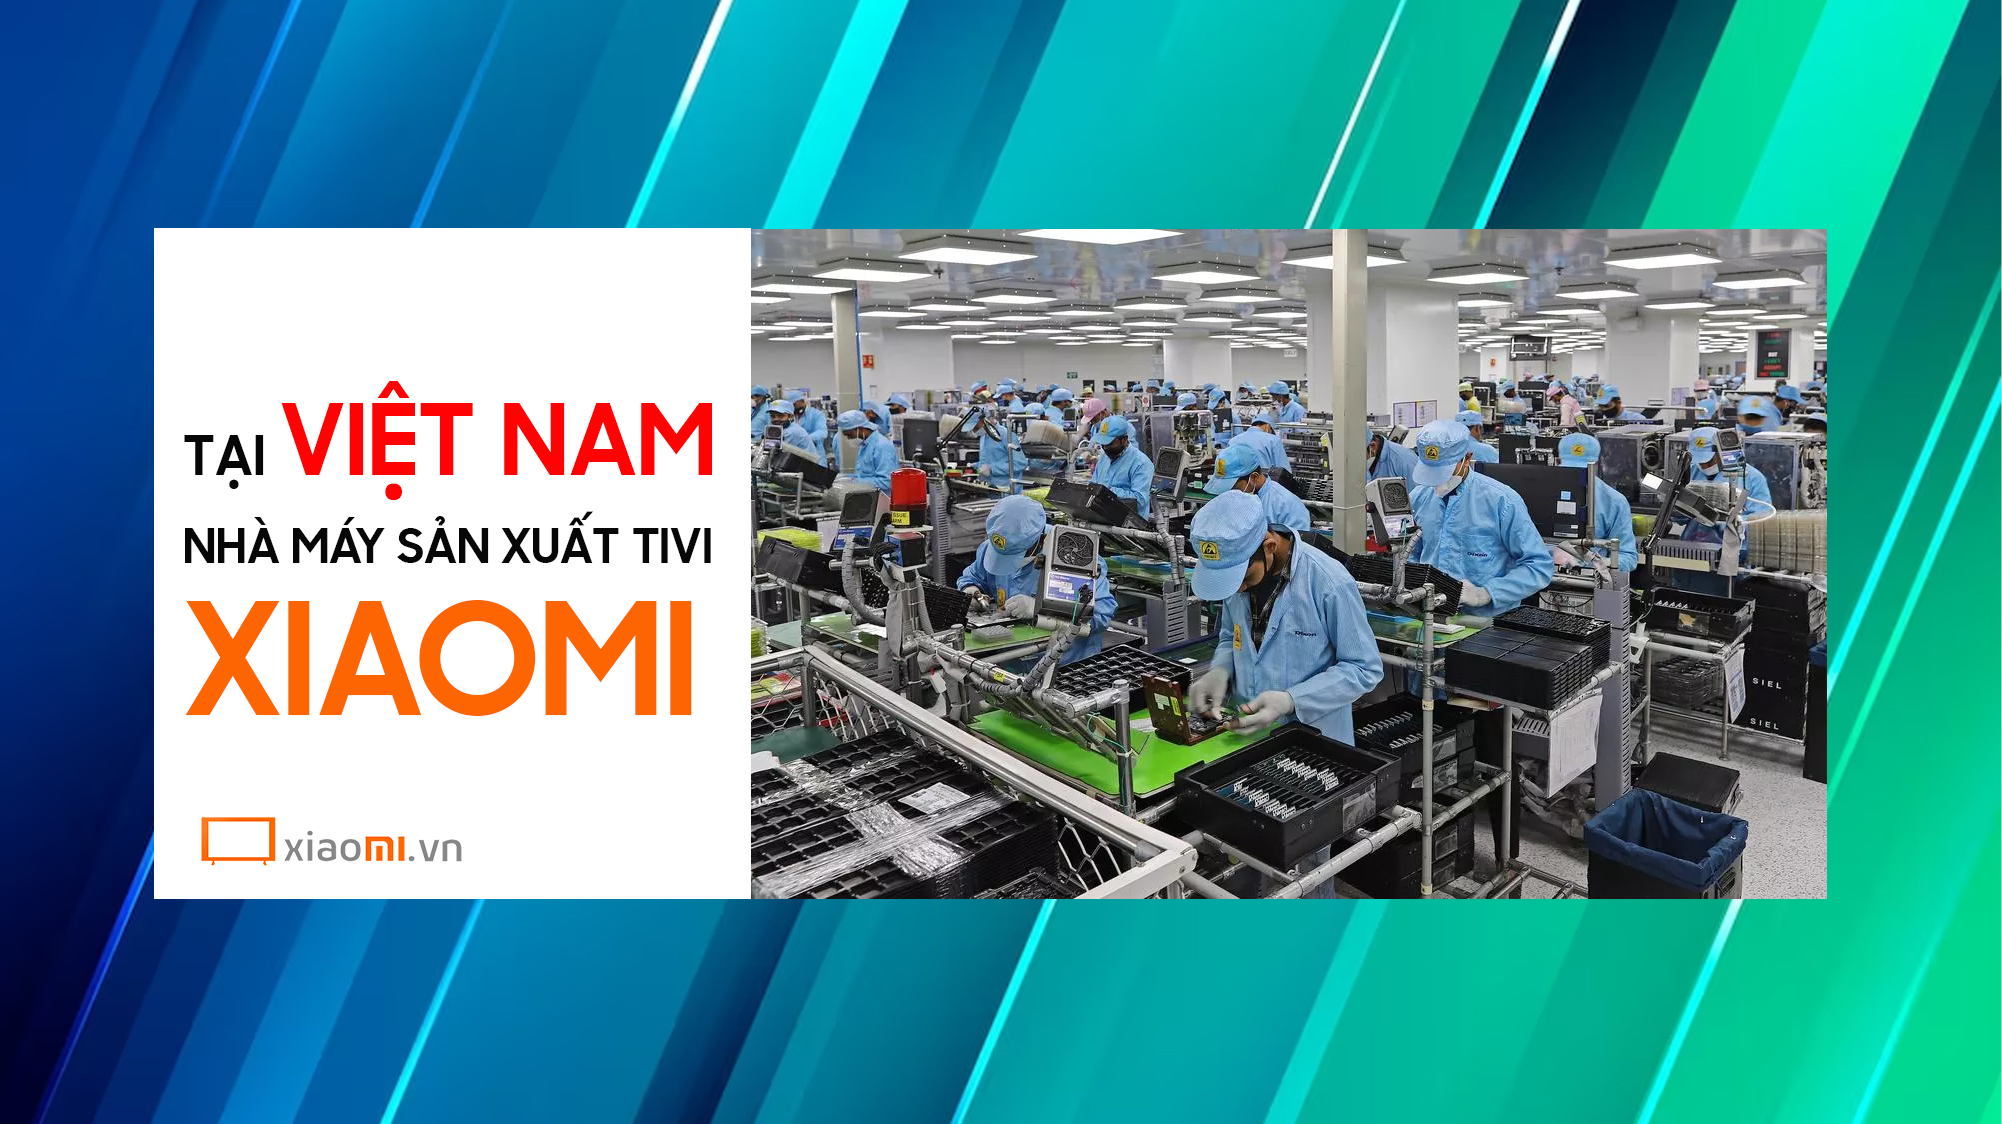 Nhà máy sản xuất Tivi Xiaomi tại Việt Nam chế tạo những gì?